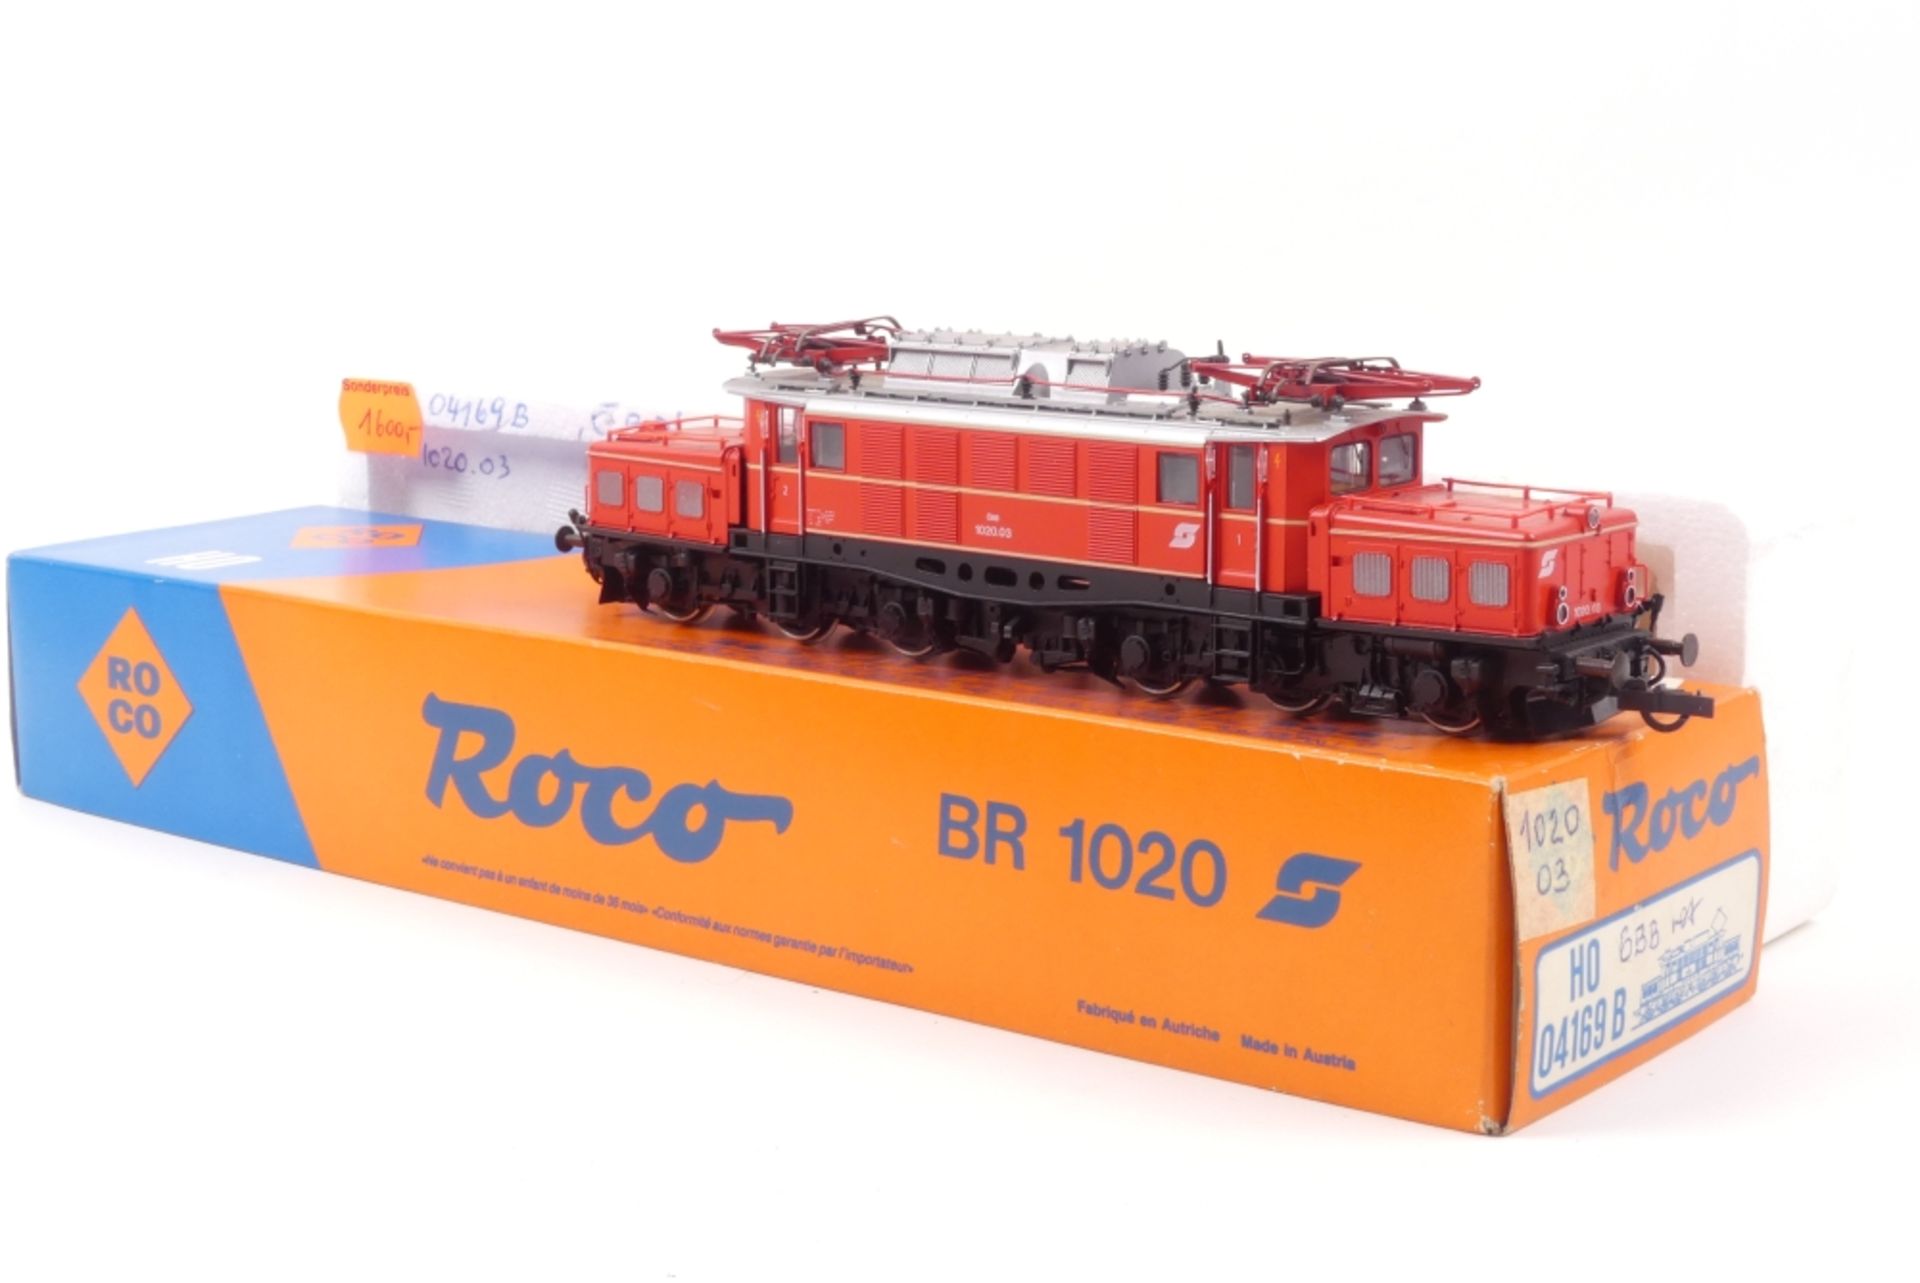 Roco 04169 BRoco 04169 B, ÖBB E-Lok 1020 03, gut erhalten, leichte Gebrauchsspuren, K